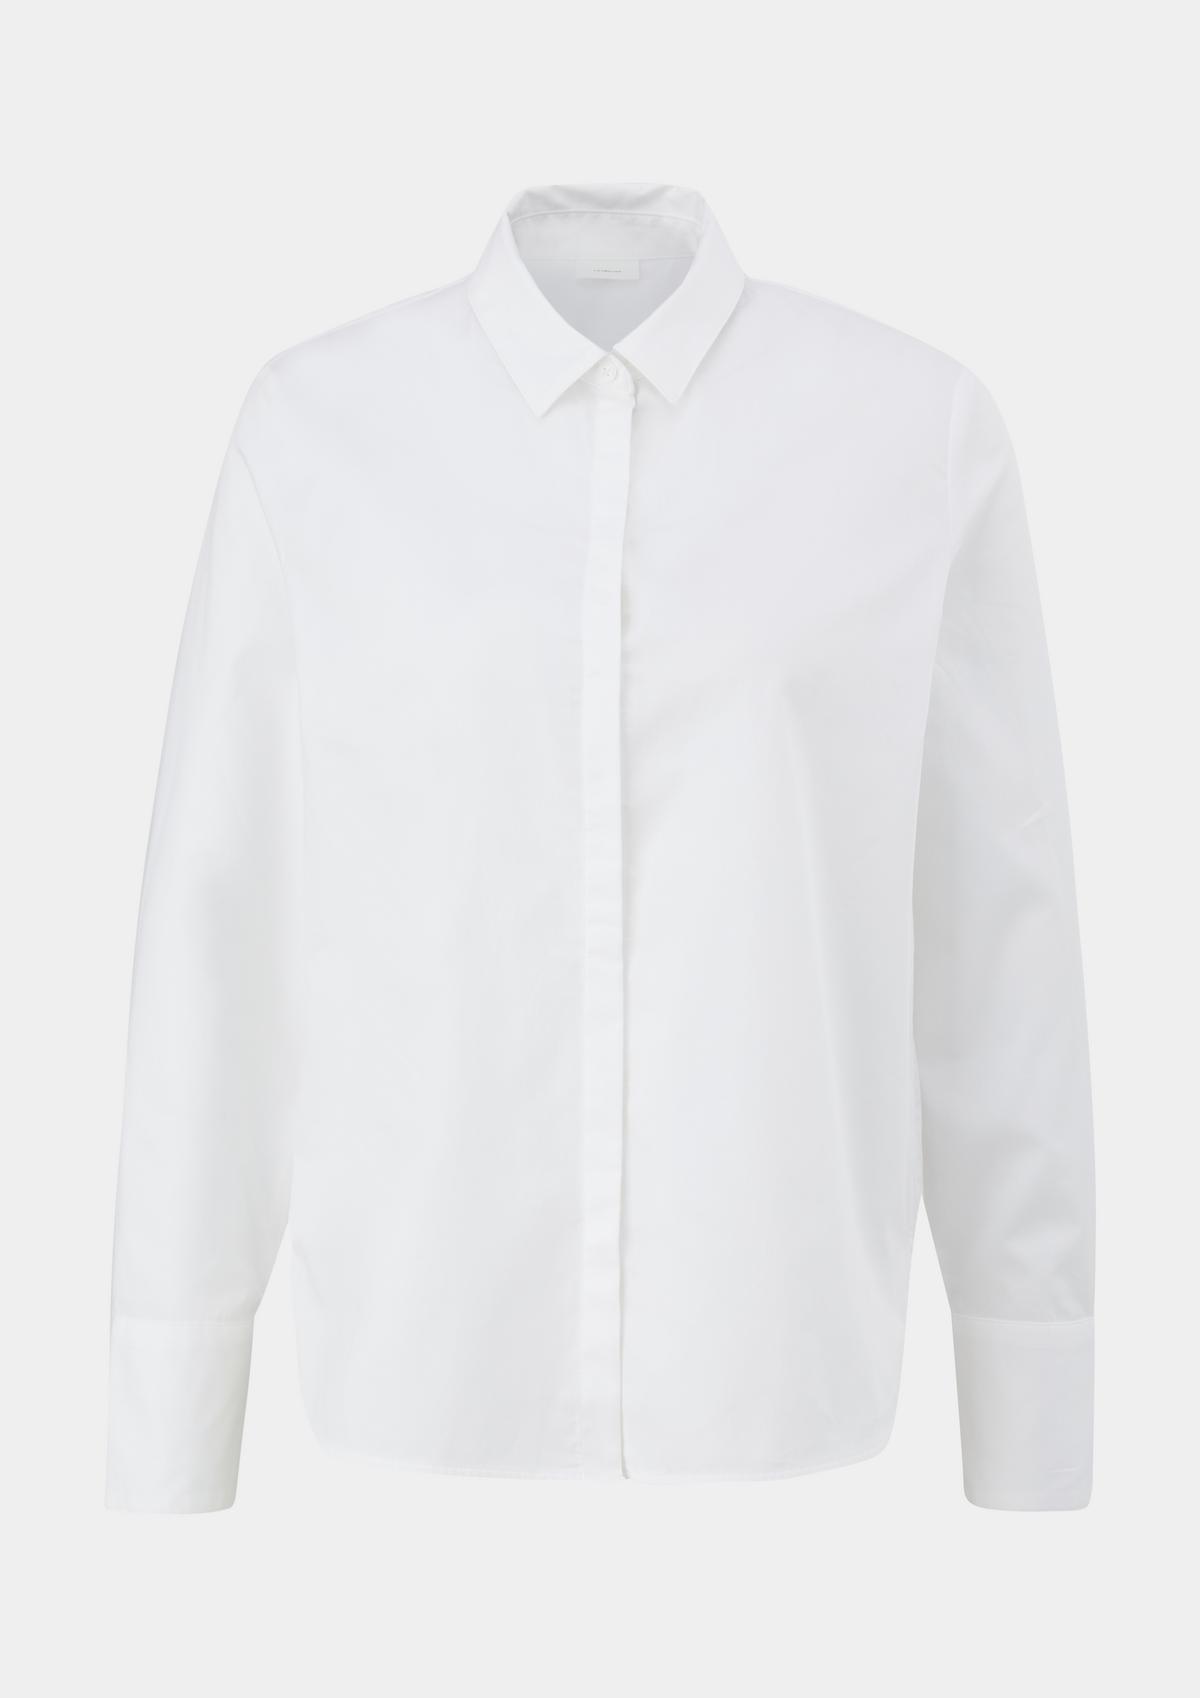 Bluse mit verdeckter Knopfleiste - weiß